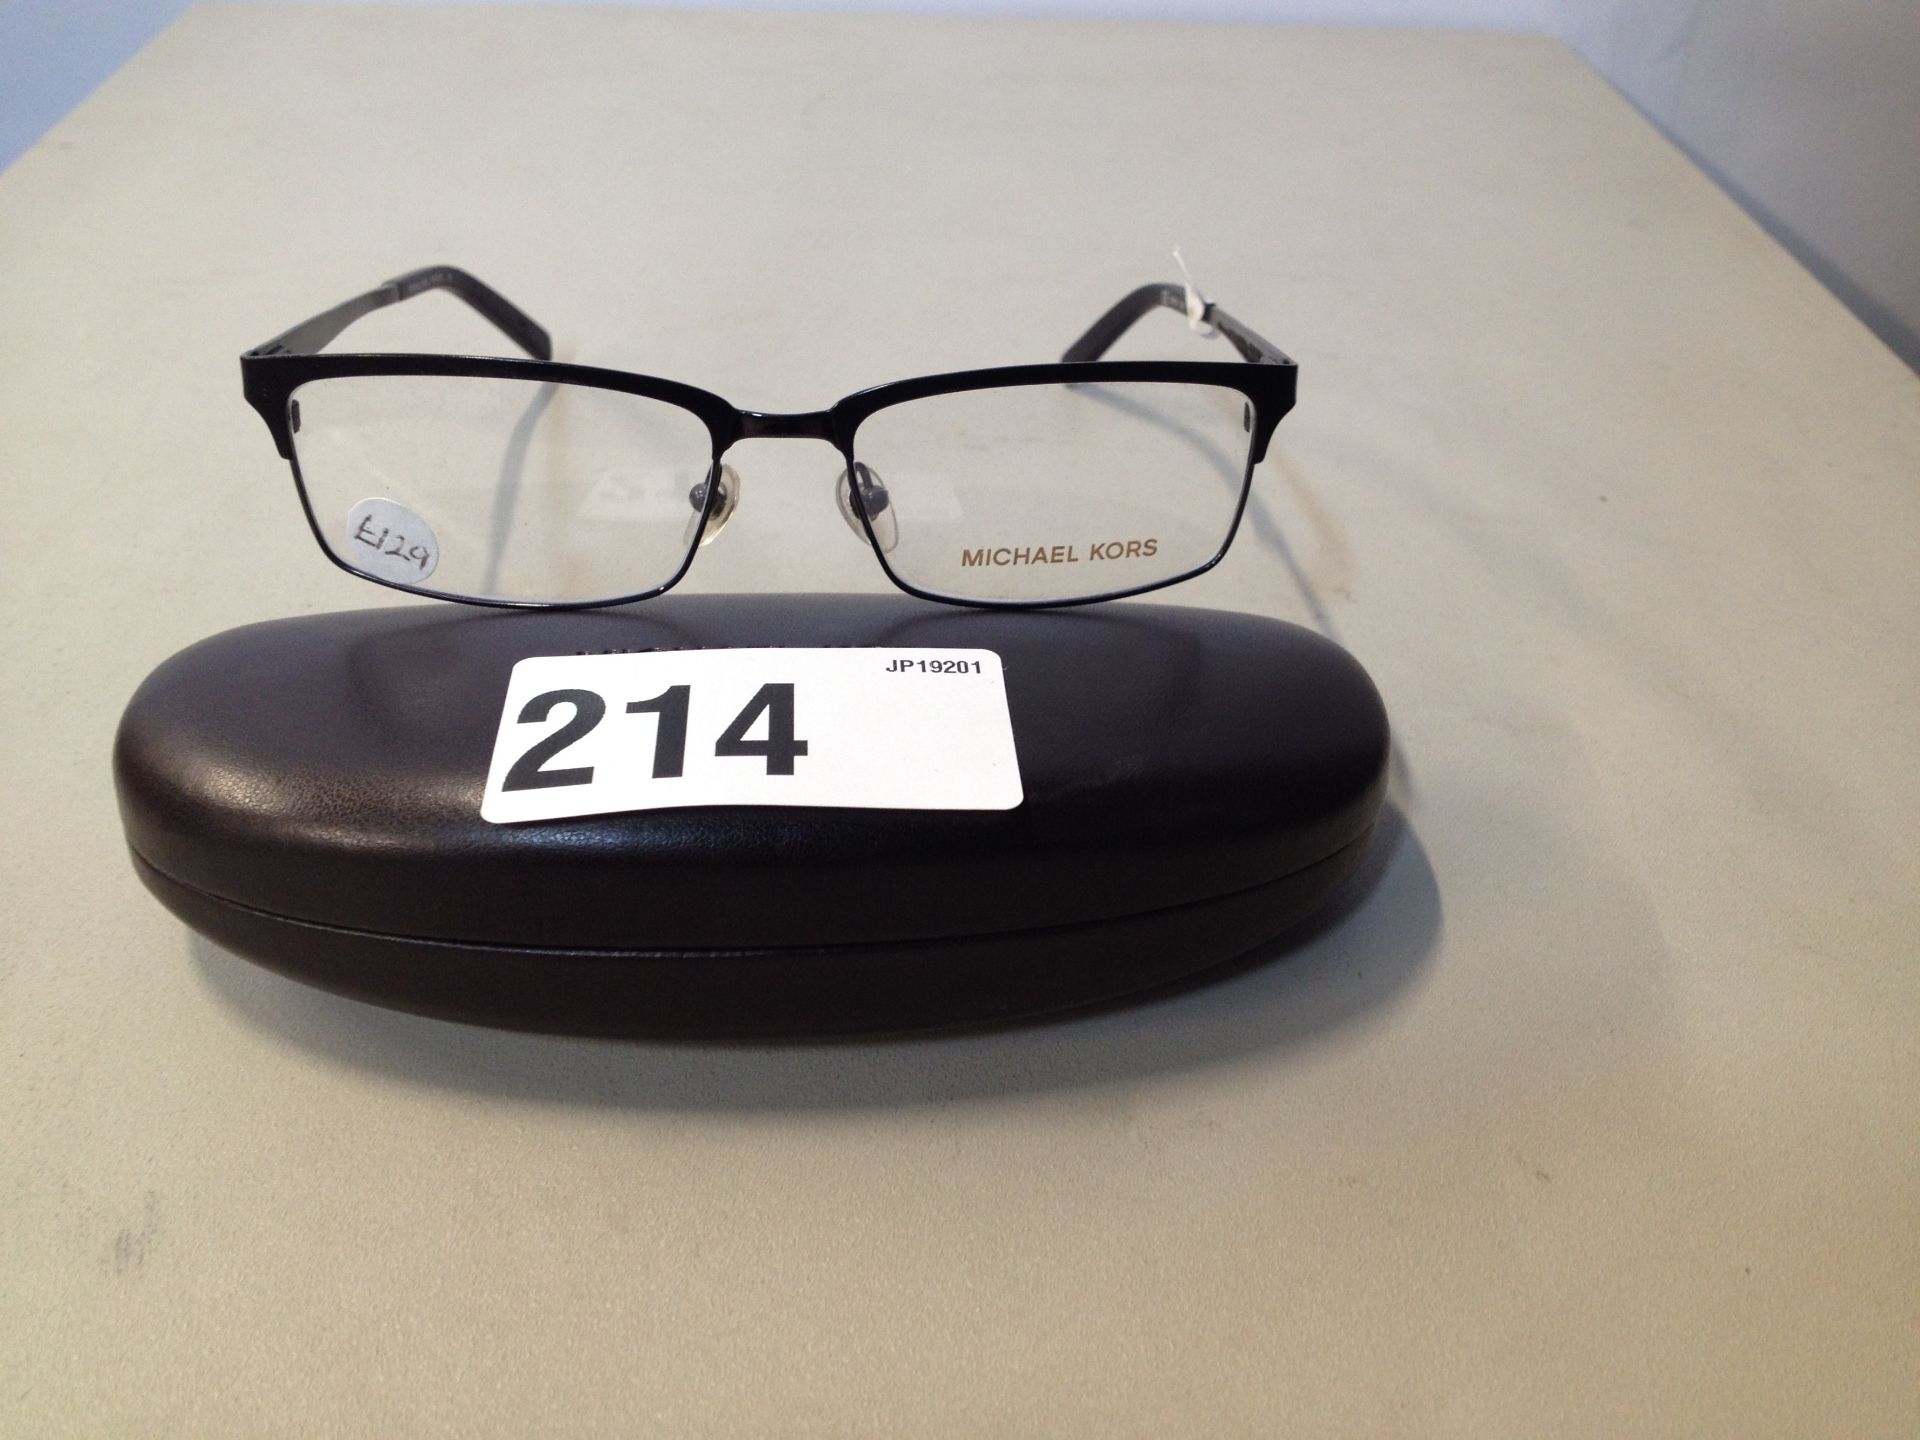 1 x Michael Koors Glasses